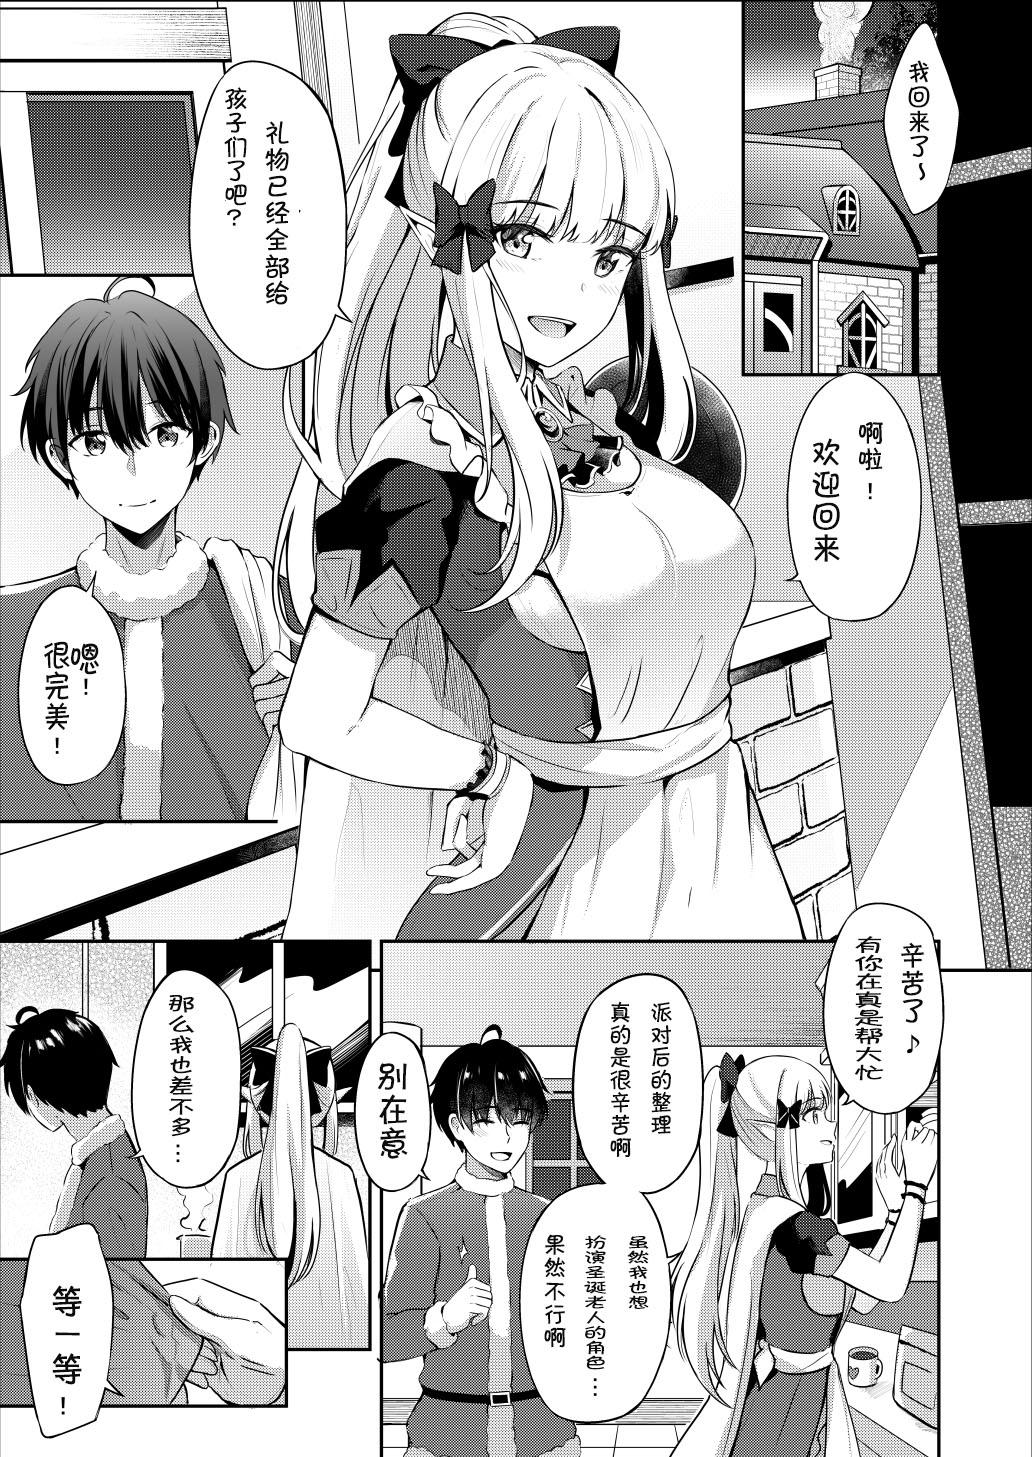 Masterbation Saren no Tanoshii Yume - Princess connect Hand - Page 4